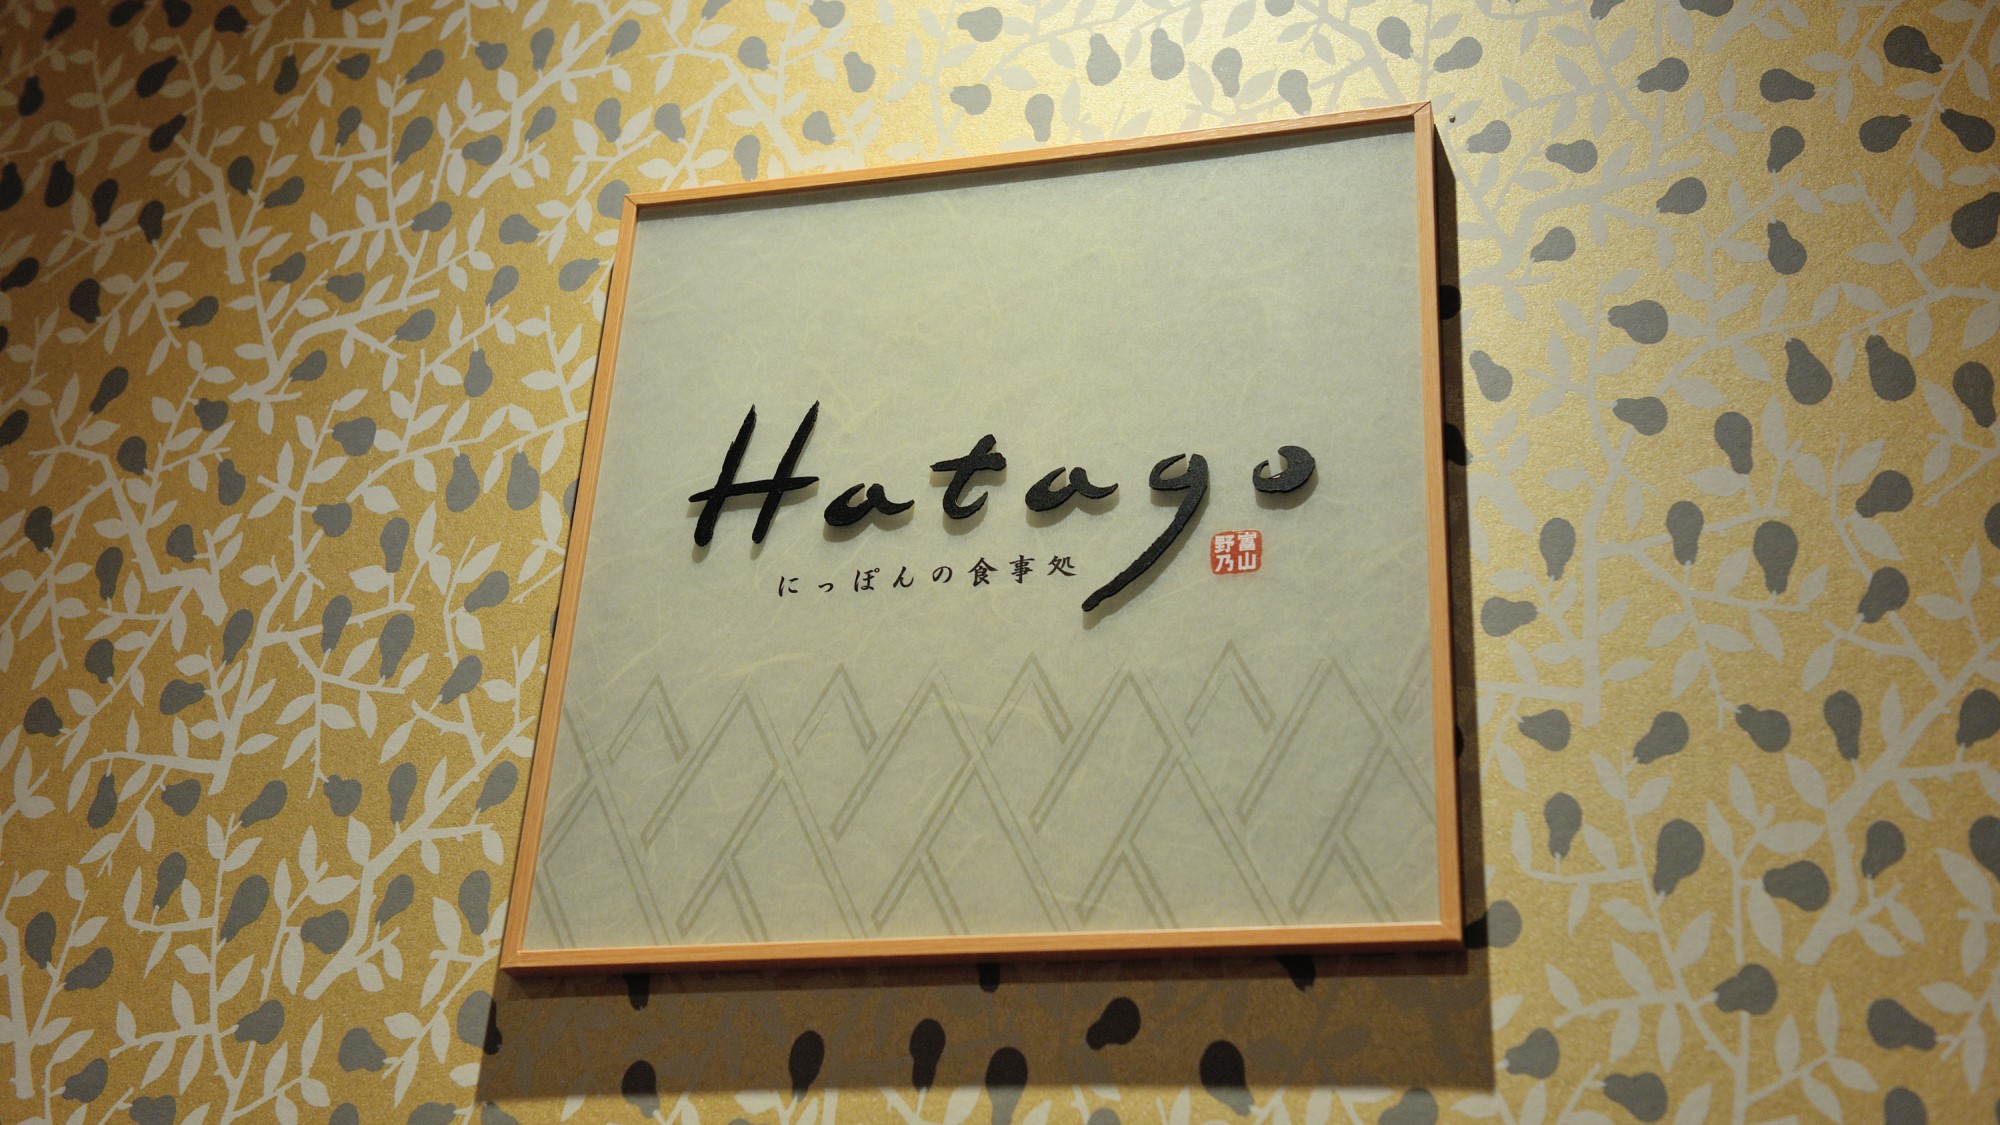 ◇2Fレストラン「Hatago」朝食営業時間6:30～9:30